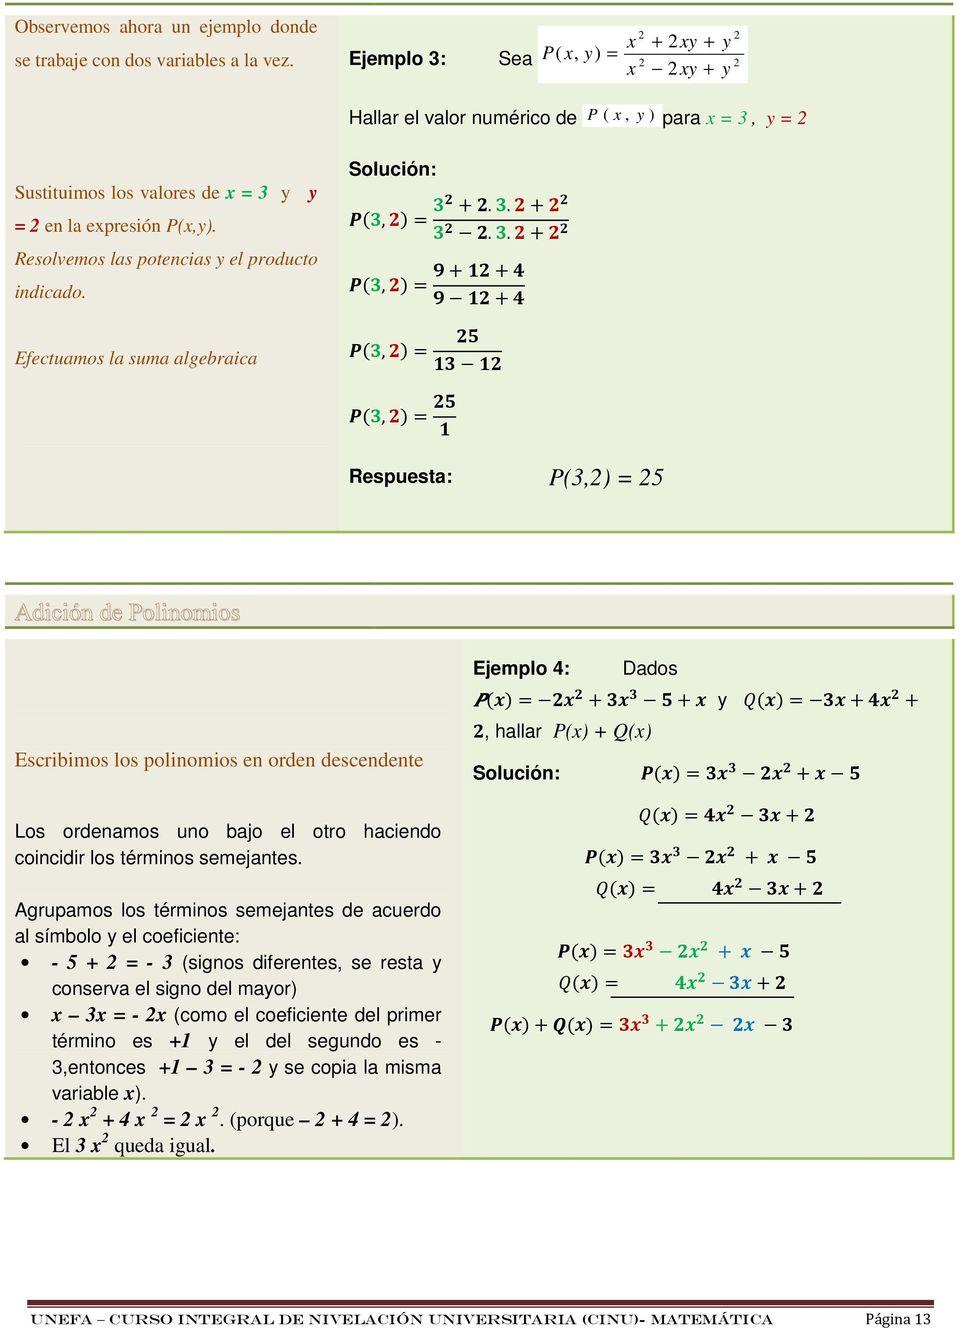 Efectuamos la suma algebraica Solución: (!,).... (!,) $# $# (!,) $$ (!